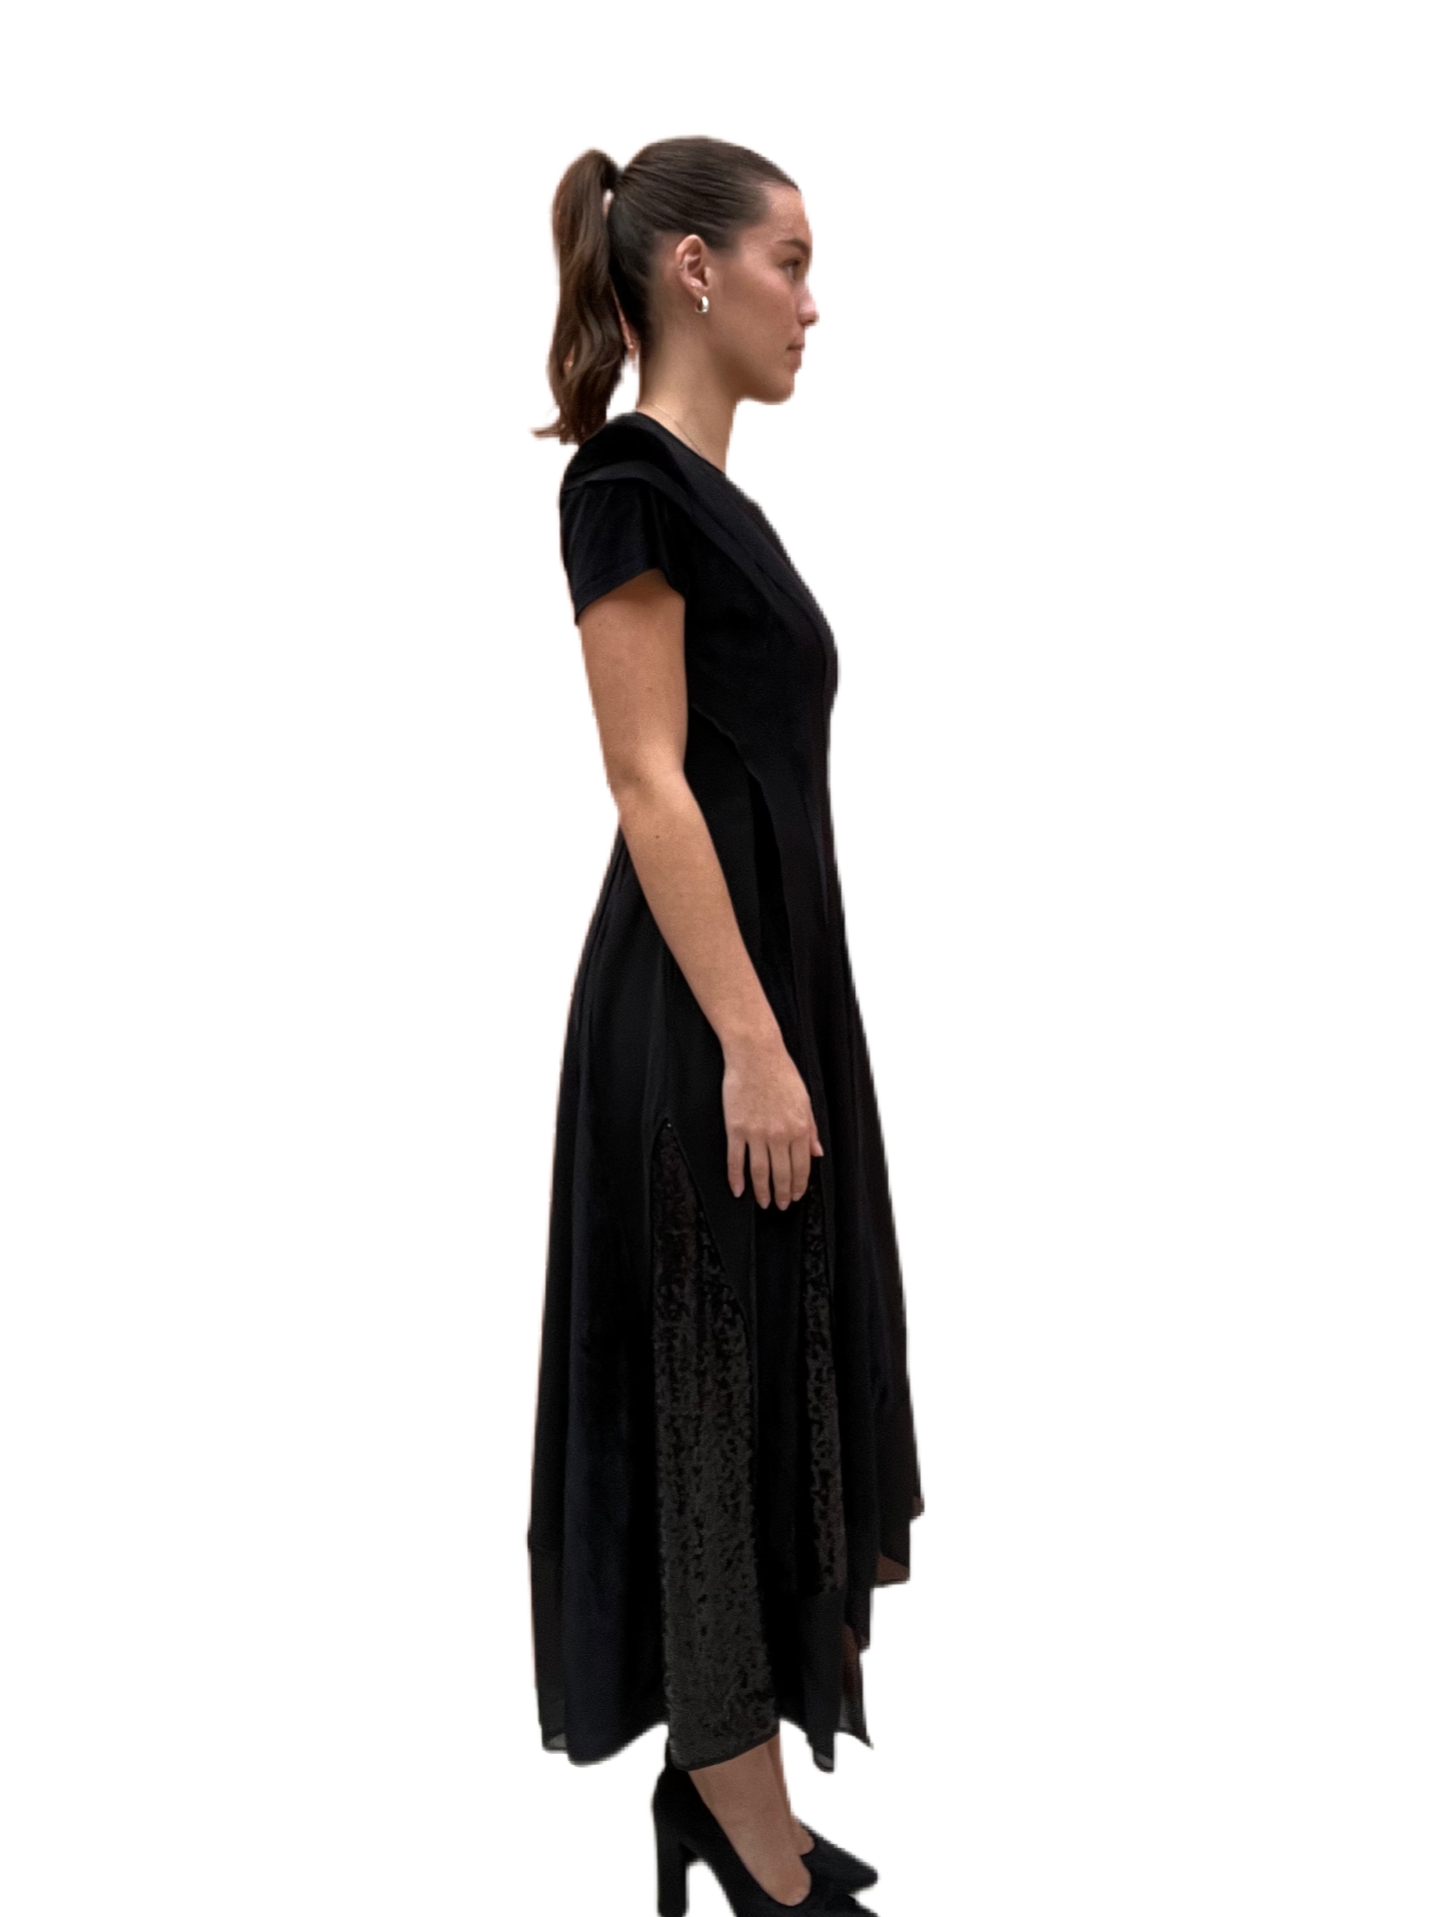 High Tech Black Dress. Size: 40